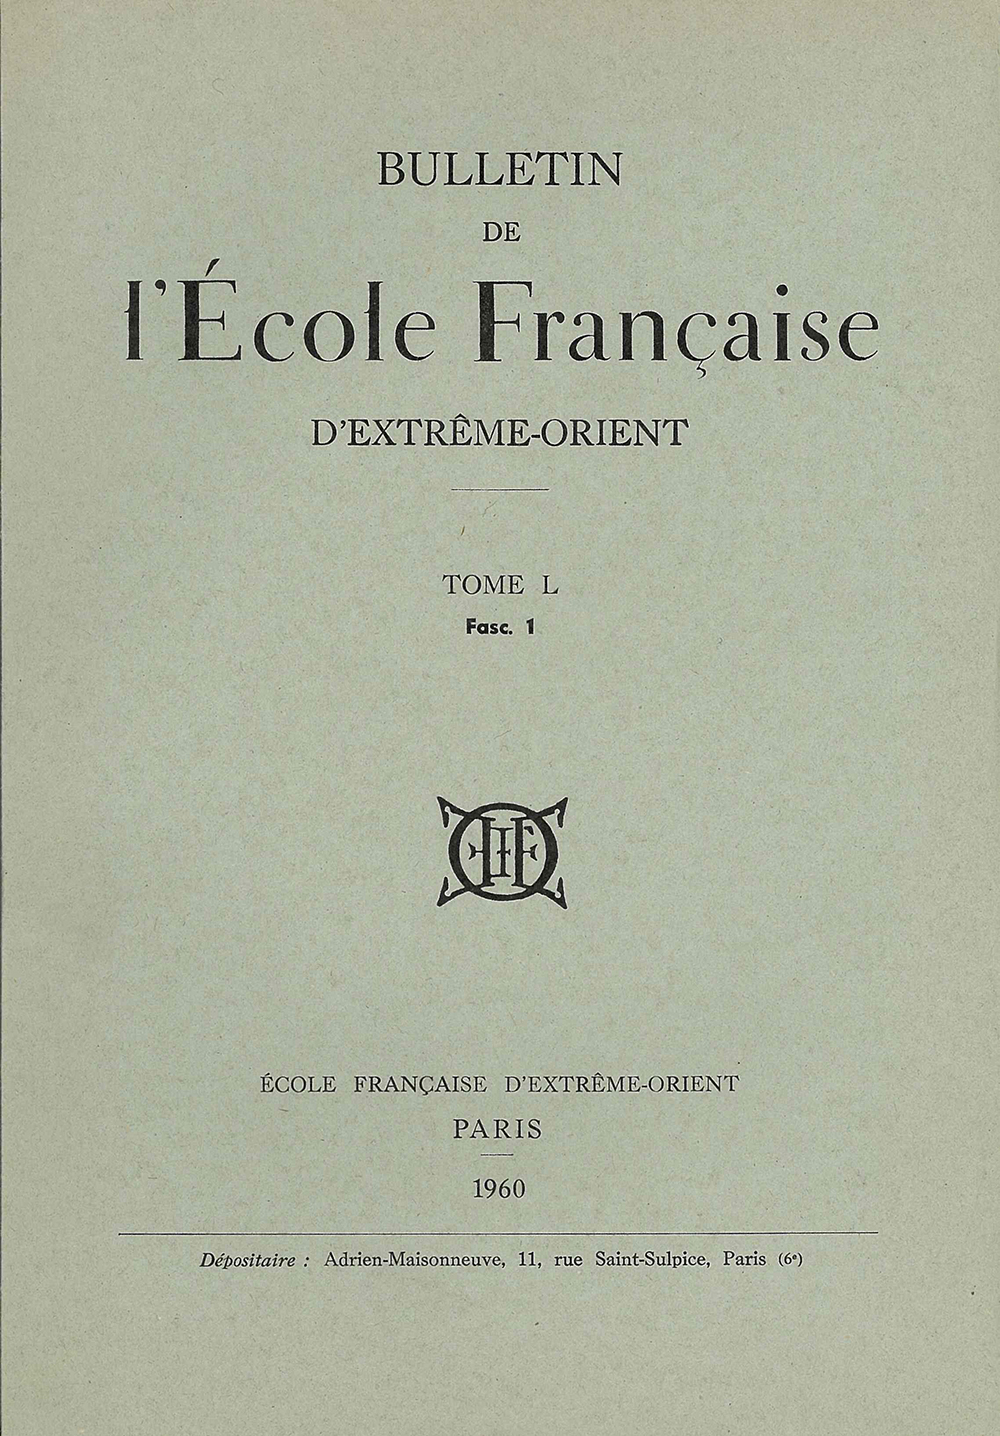 Bulletin de l'Ecole française d'Extrême-Orient 50 (1960)